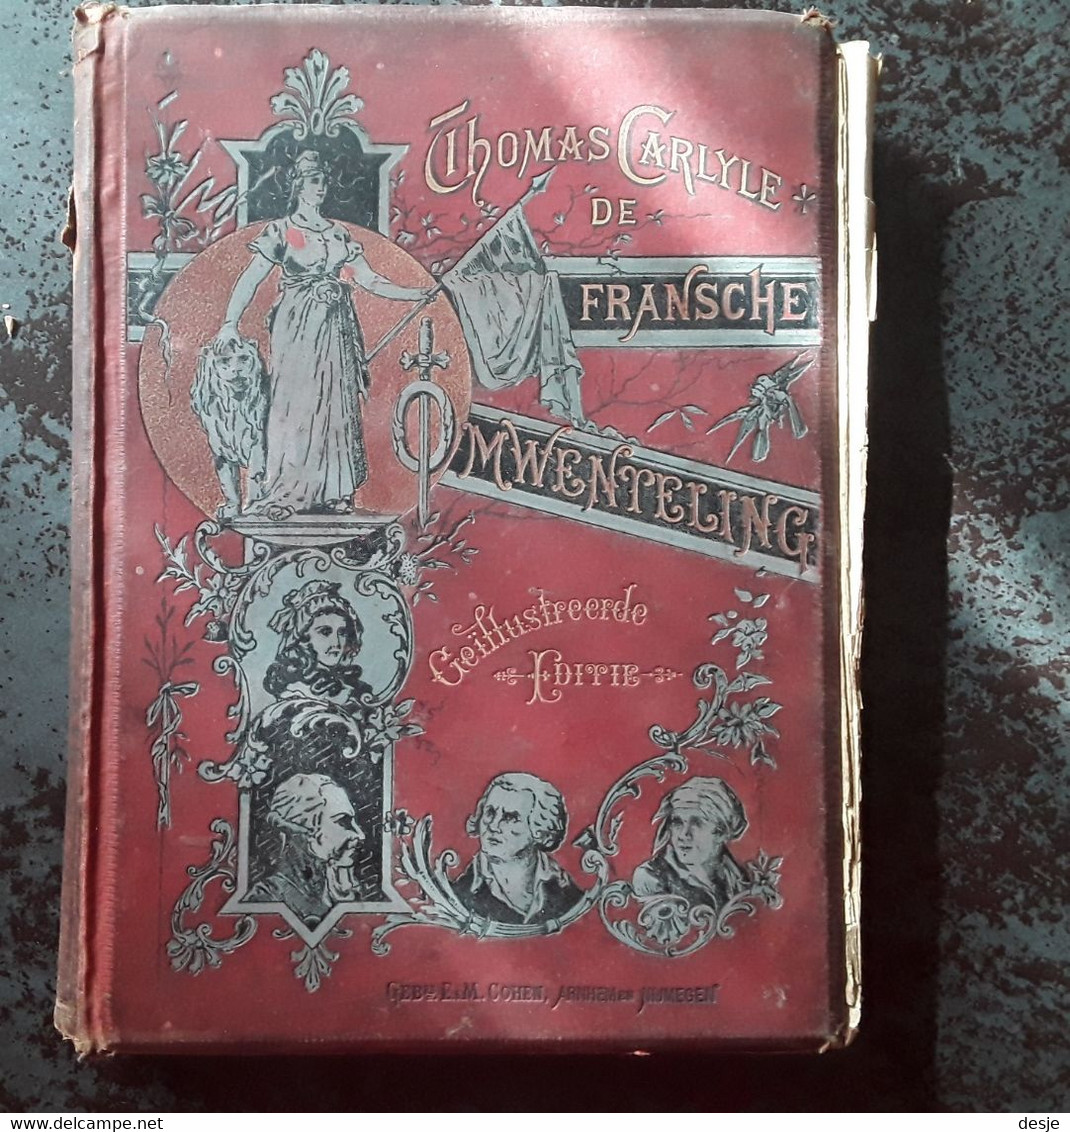 De Fransche Omwenteling Door Thomas Carlyle,tweede Deel De Constitutie, 4de Herziene Druk, Rond 1900, Nijmegen, 316 Pp. - Antique